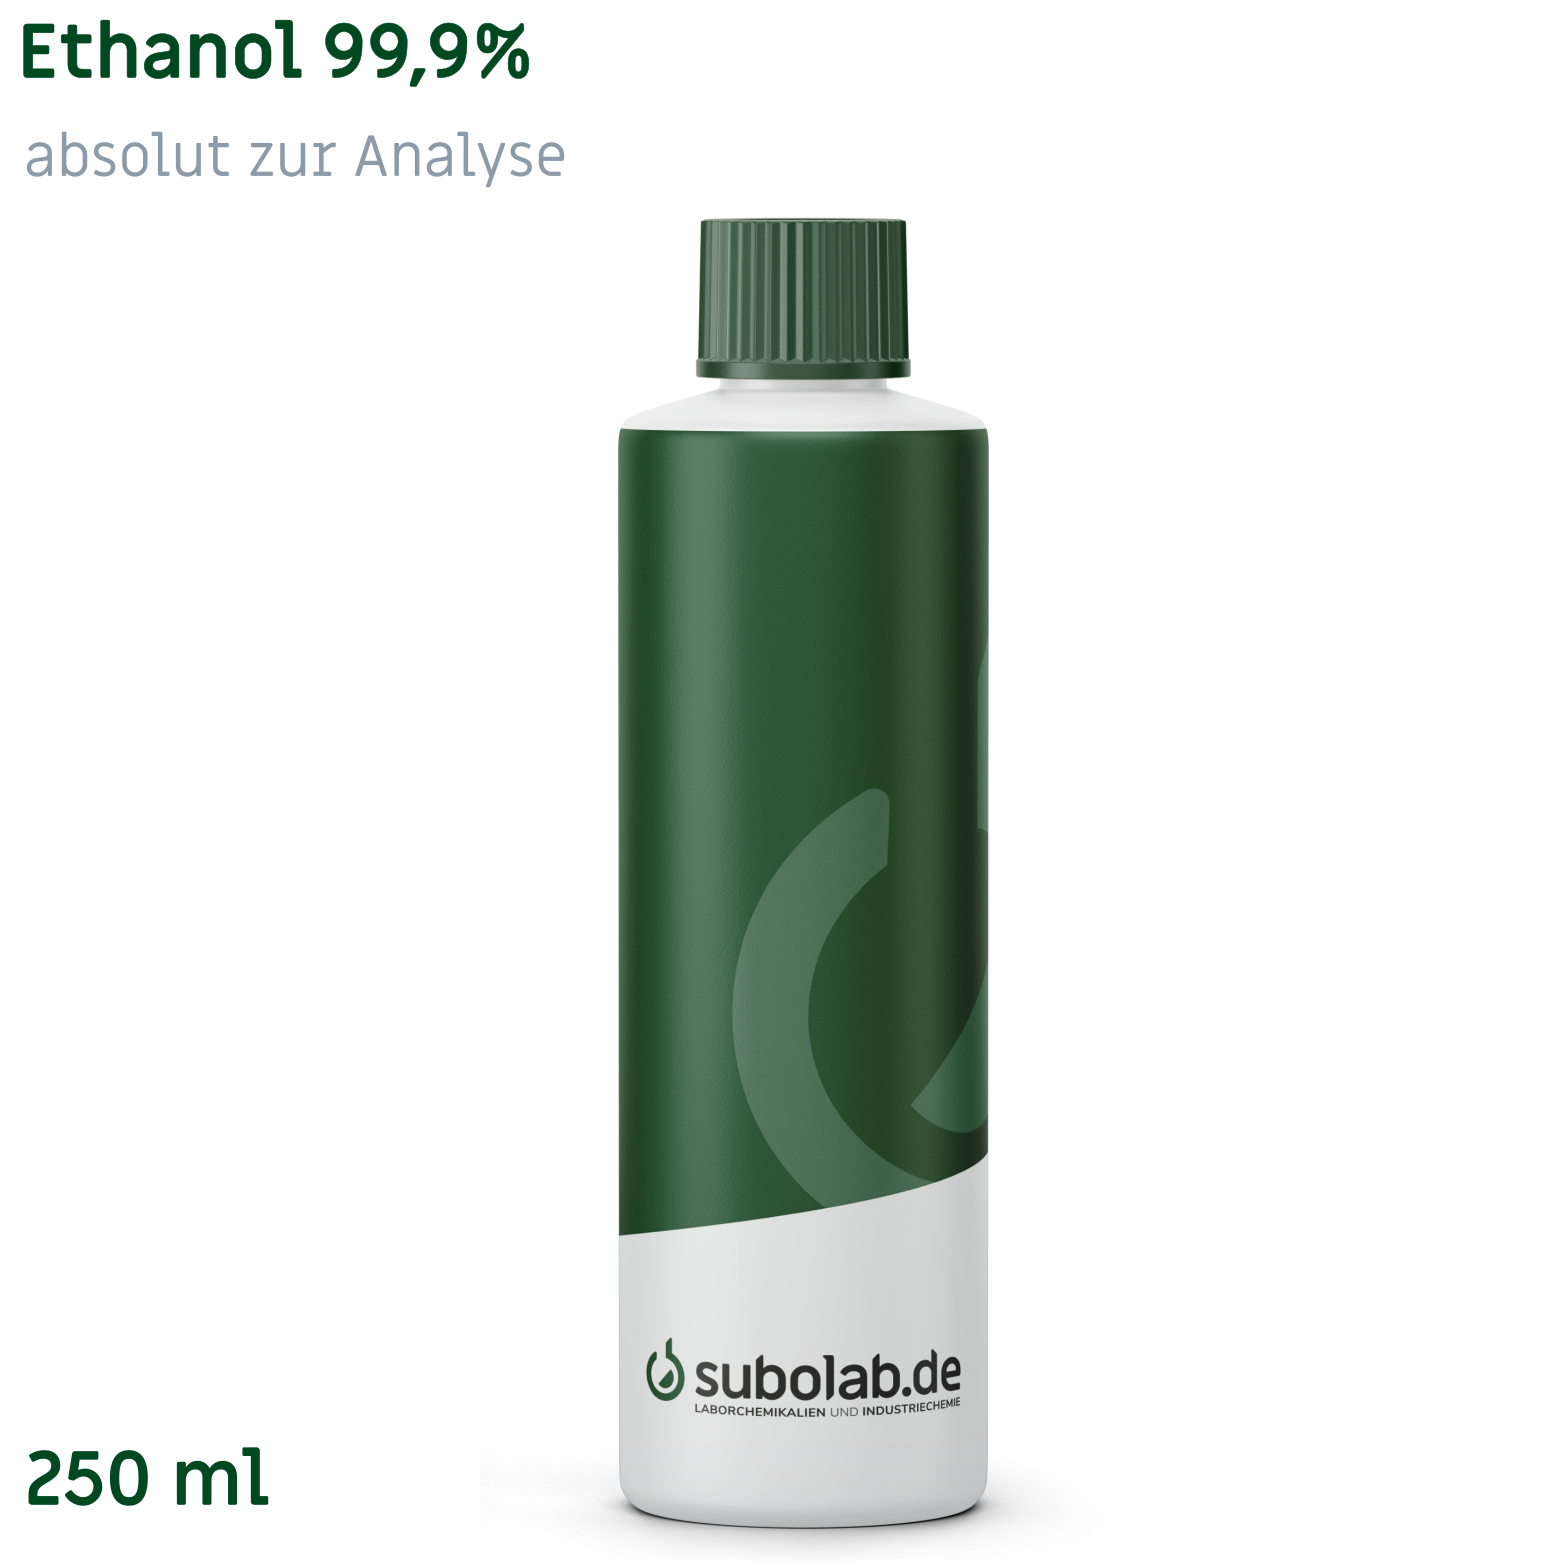 Bild von Ethanol 99,9% absolut zur Analyse (250 ml)